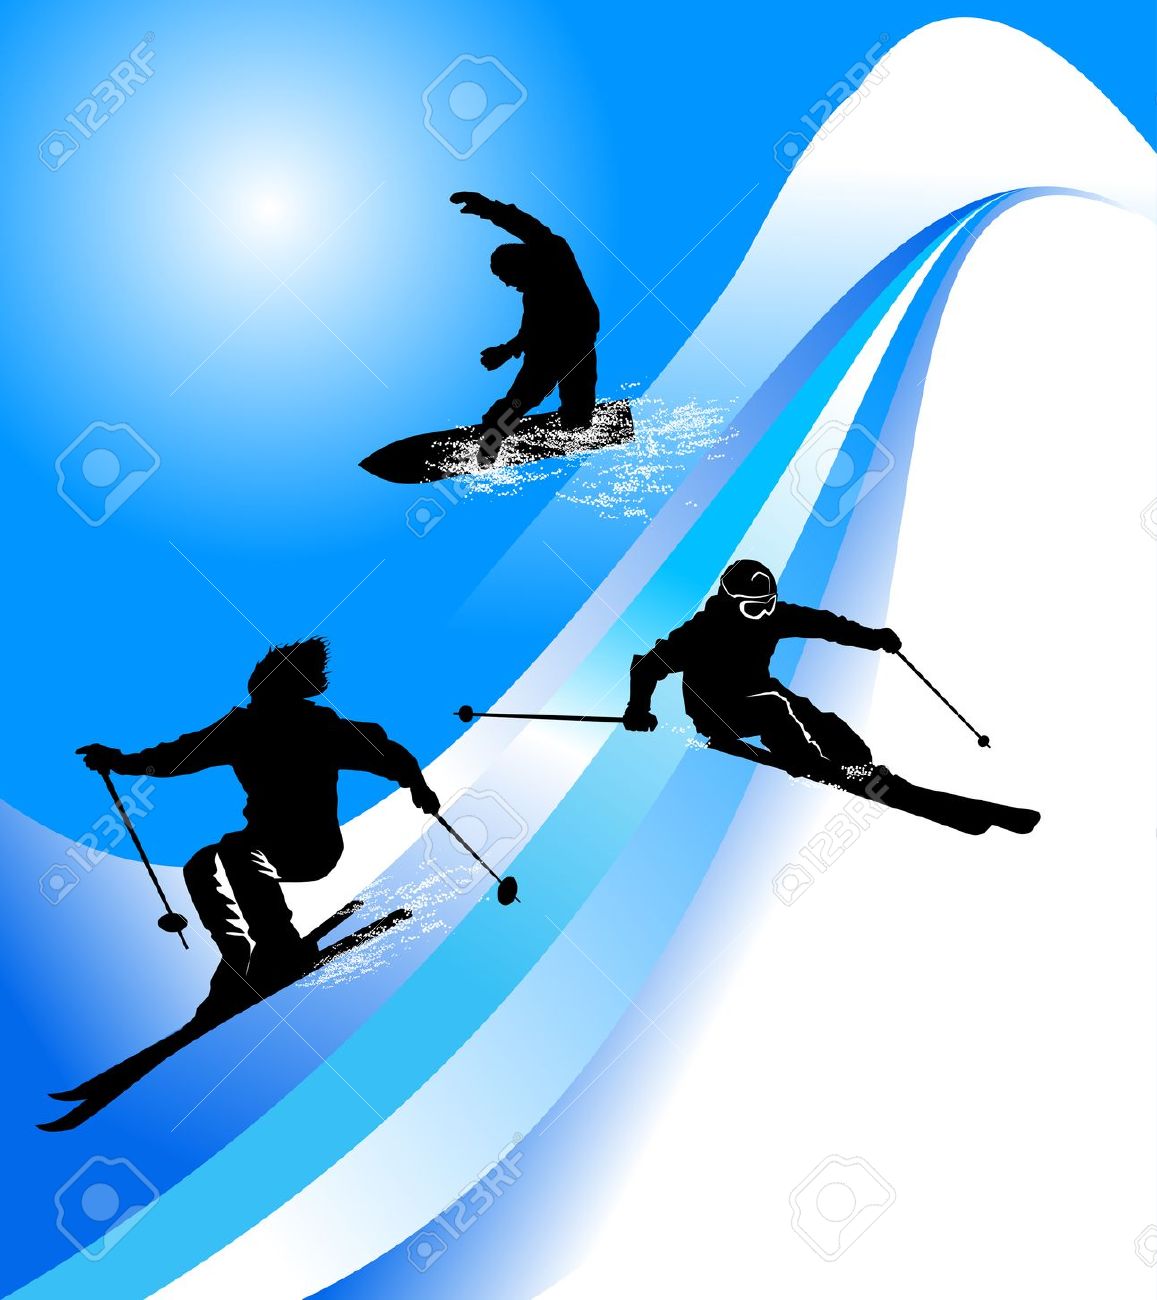 Free ski slope.